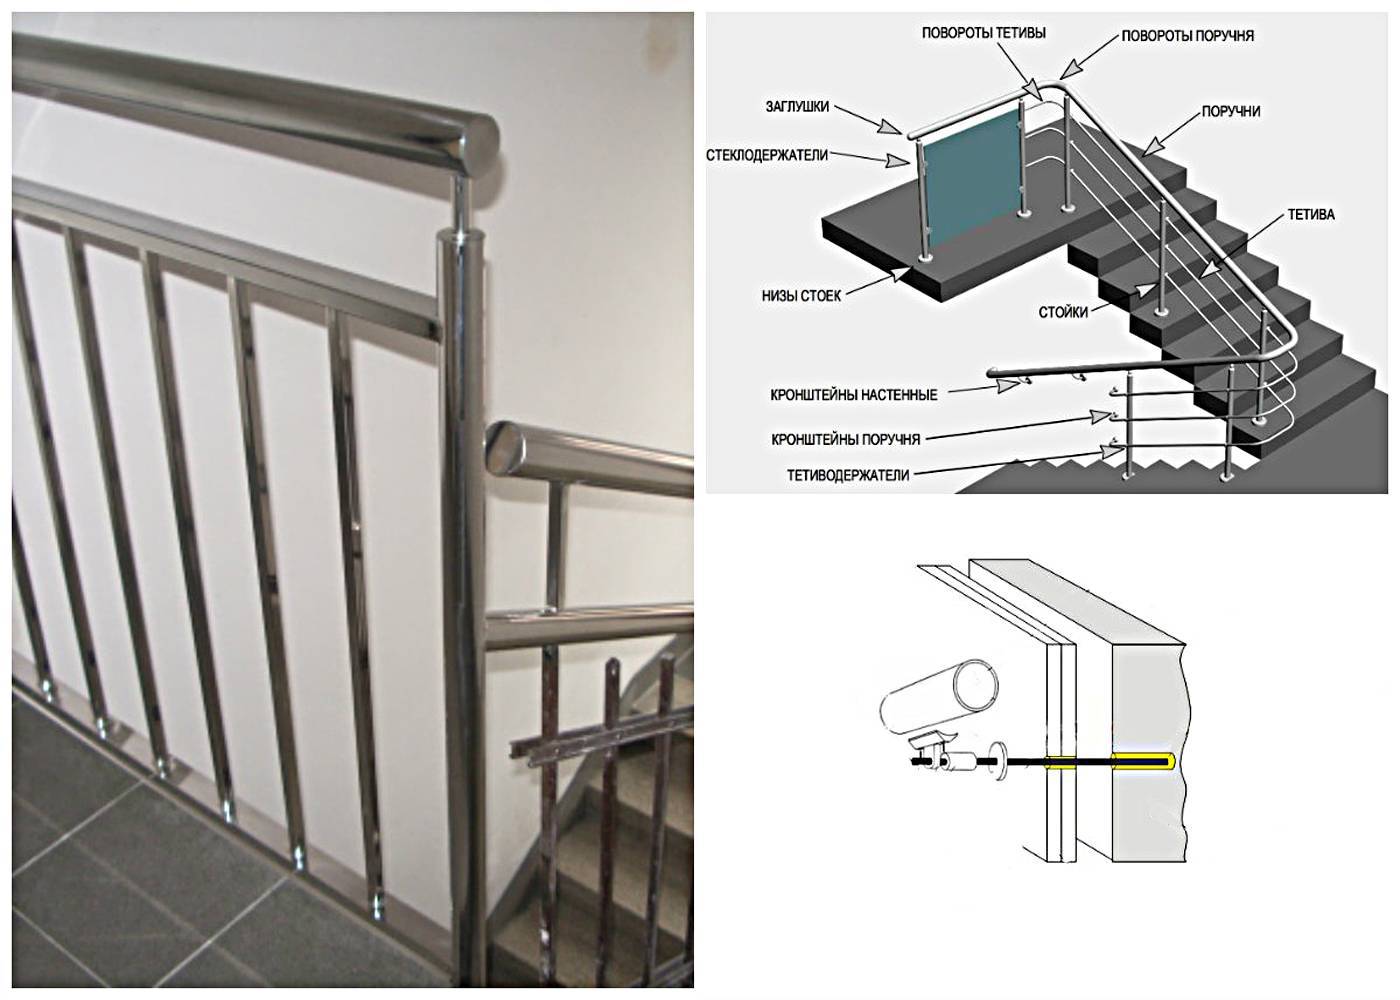 Установка поручней на лестницу, стену — варианты крепления | онлайн-журнал о ремонте и дизайне